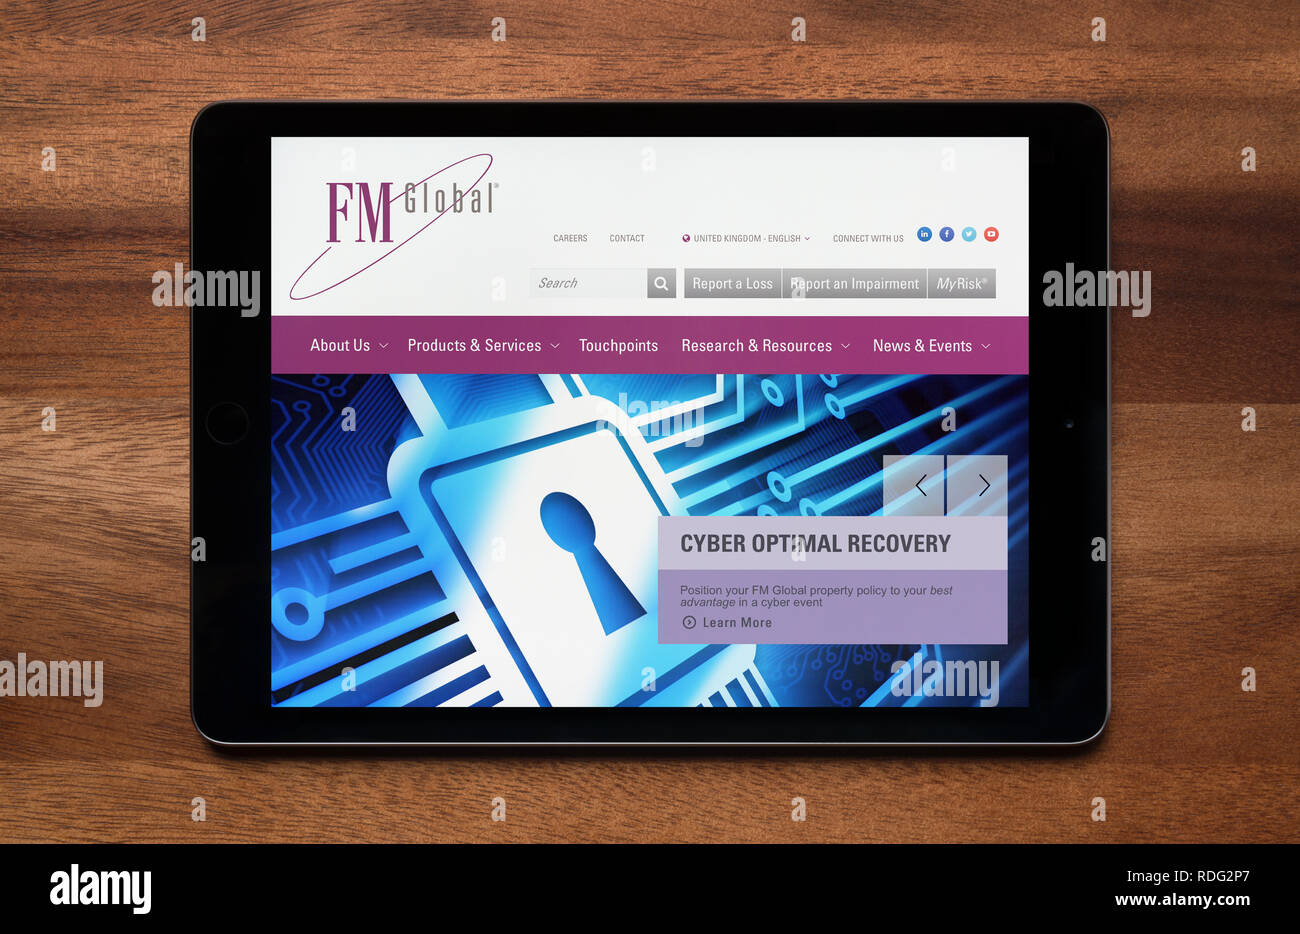 El sitio web de FM Global es visto en un iPad, que descansa sobre una mesa de madera (uso Editorial solamente). Foto de stock